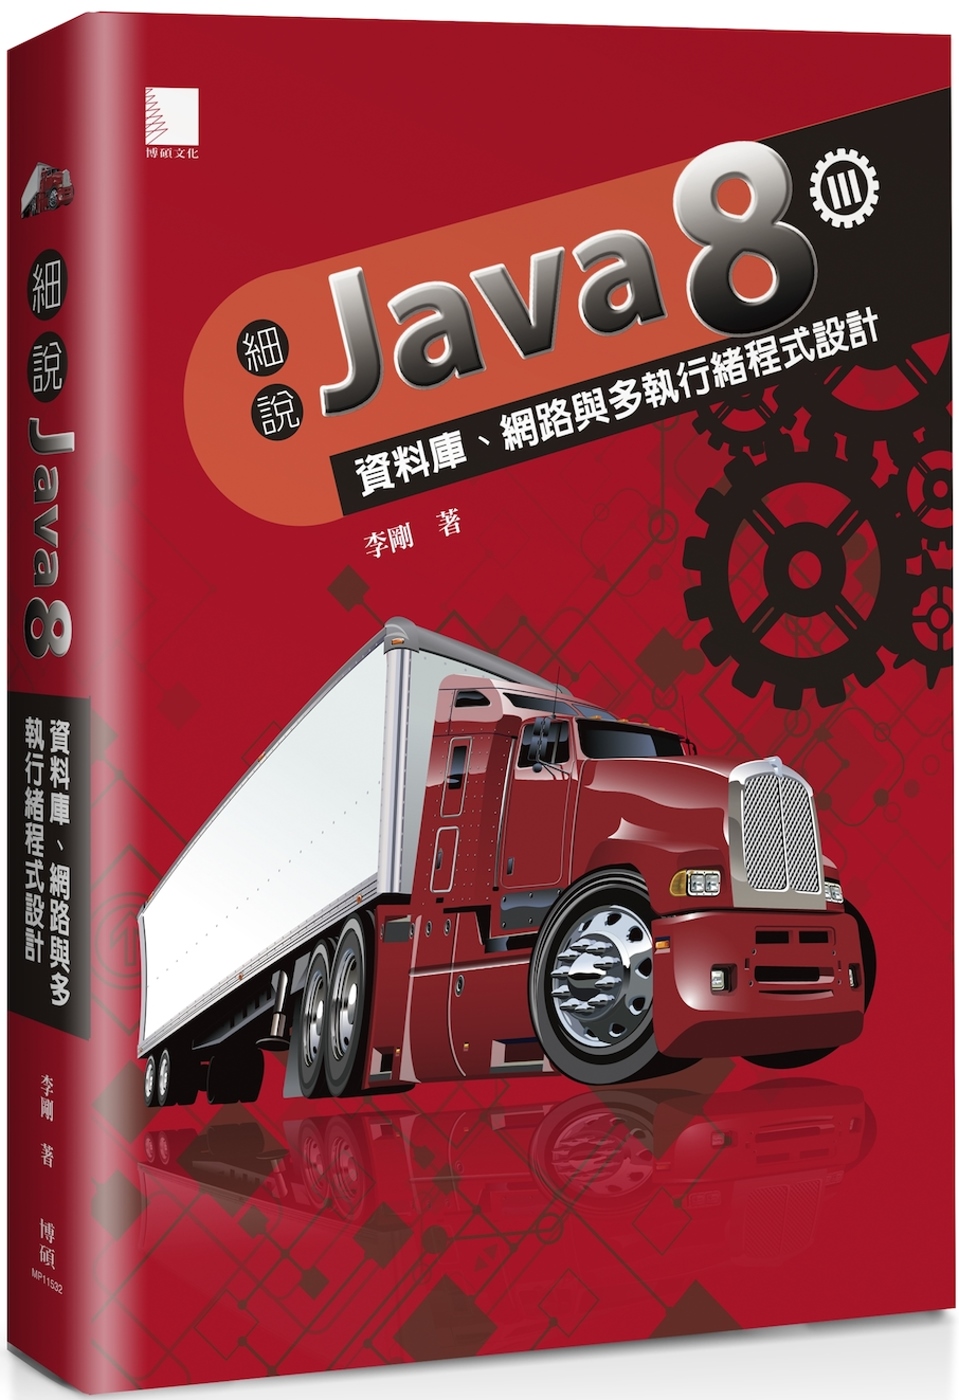 細說Java 8 Vol. III：資料庫、網路與多執行緒程式設計